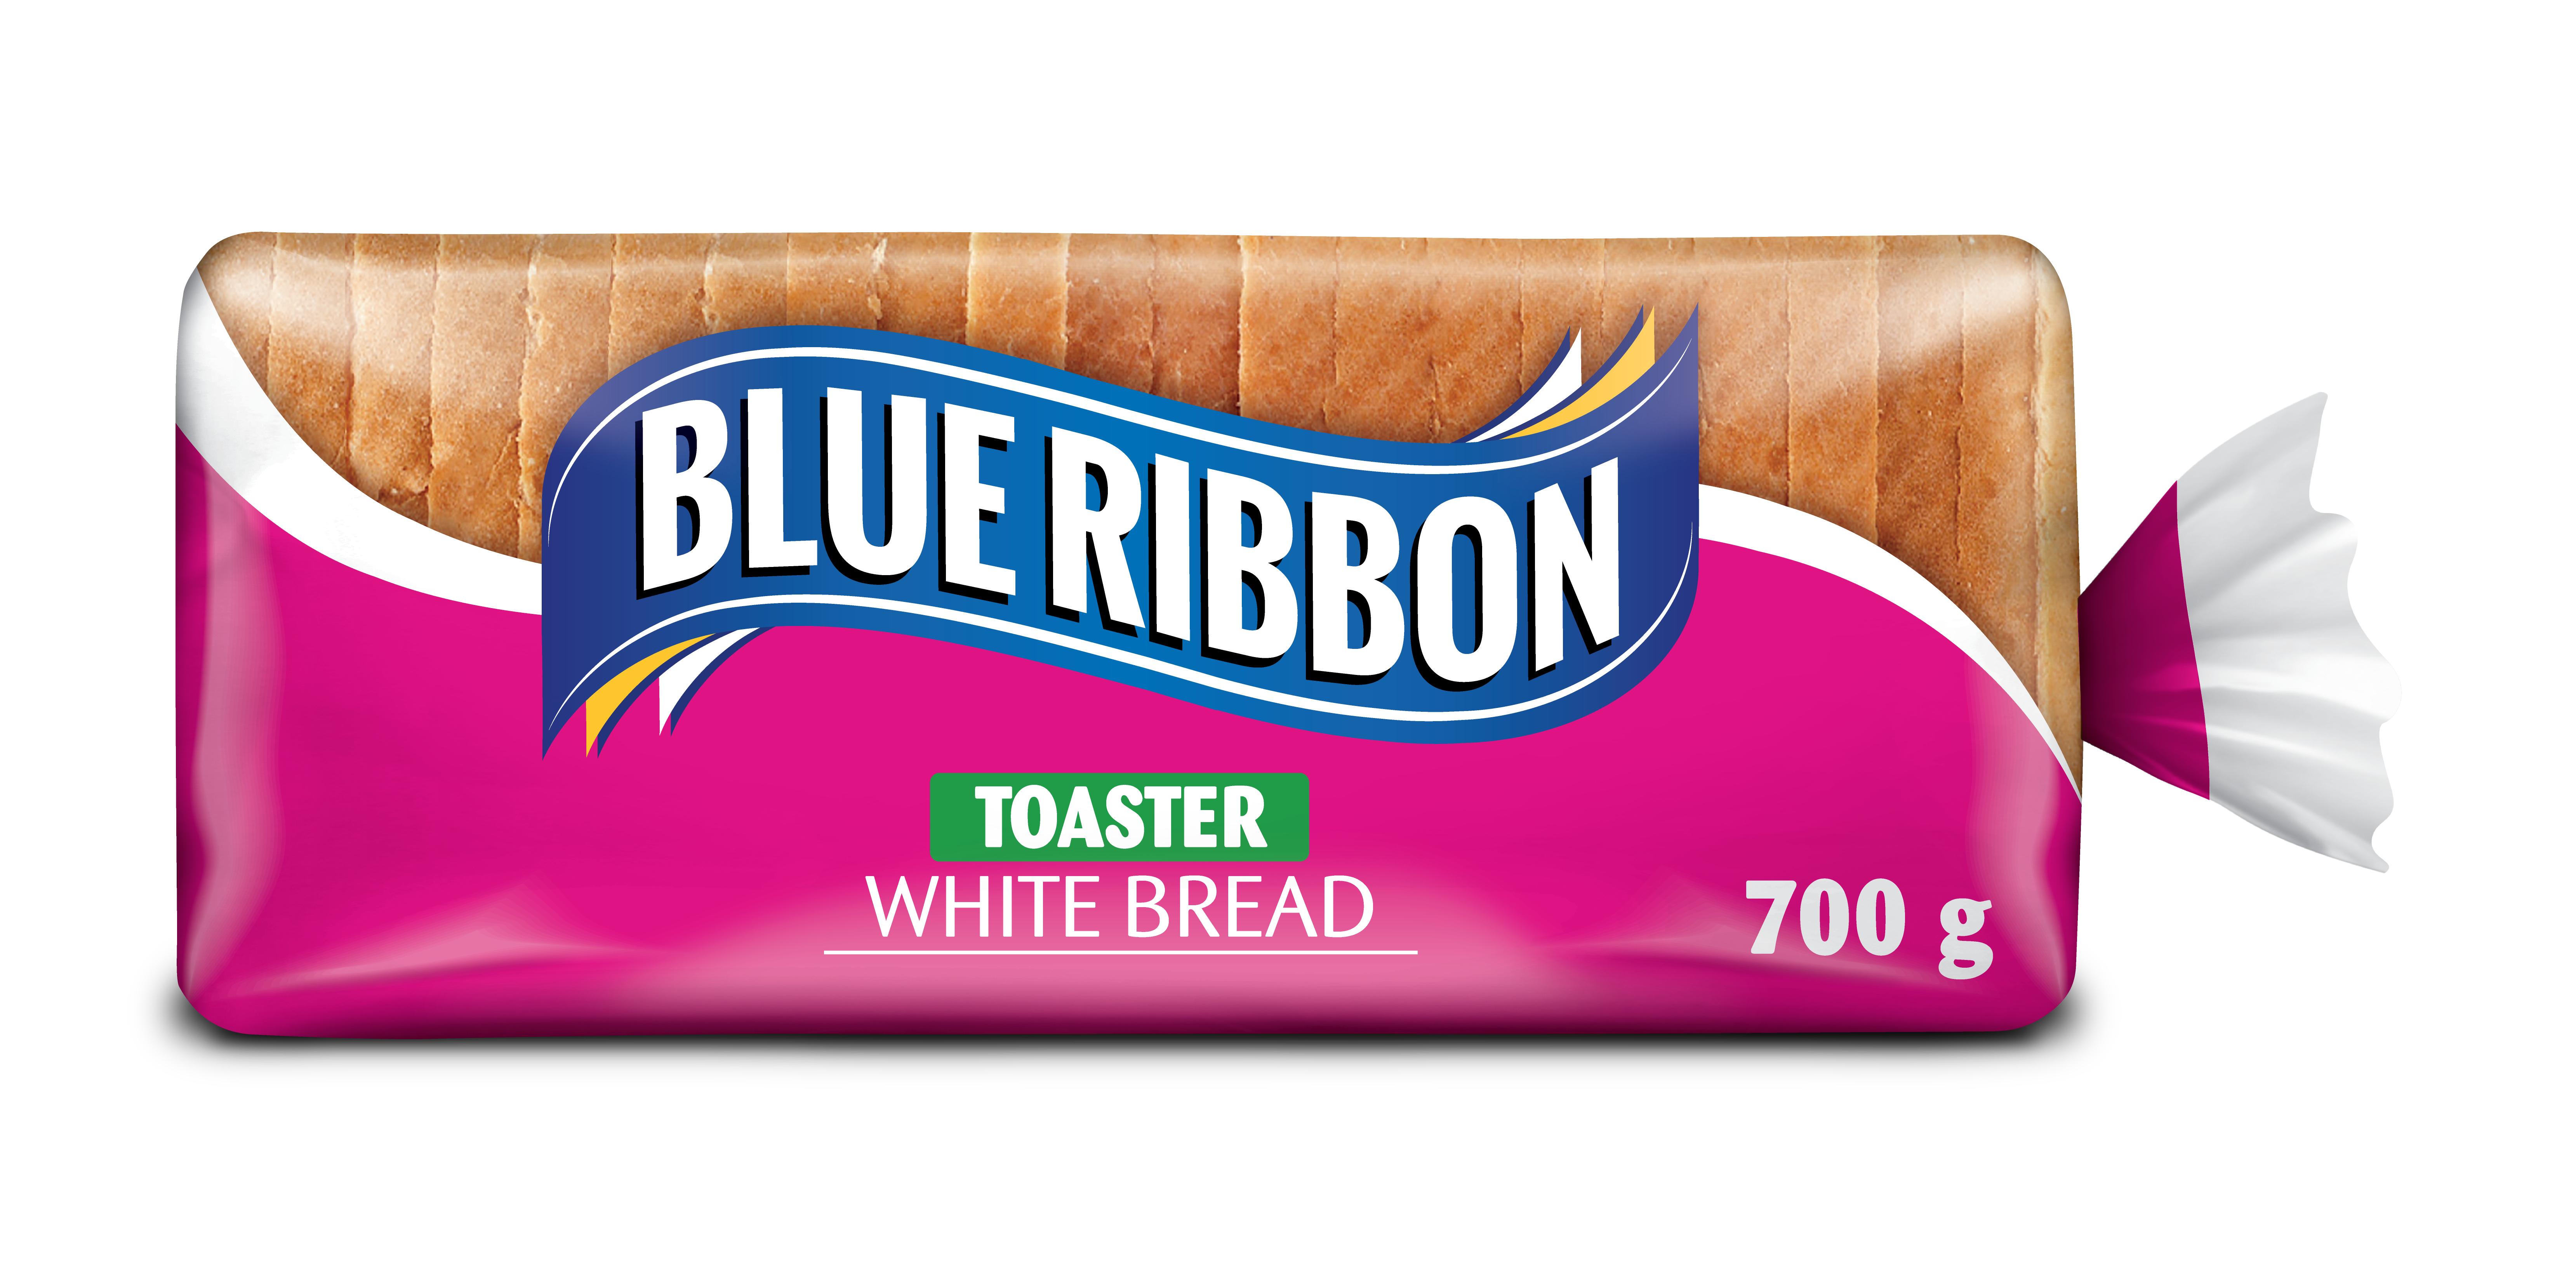 Toaster White Bread